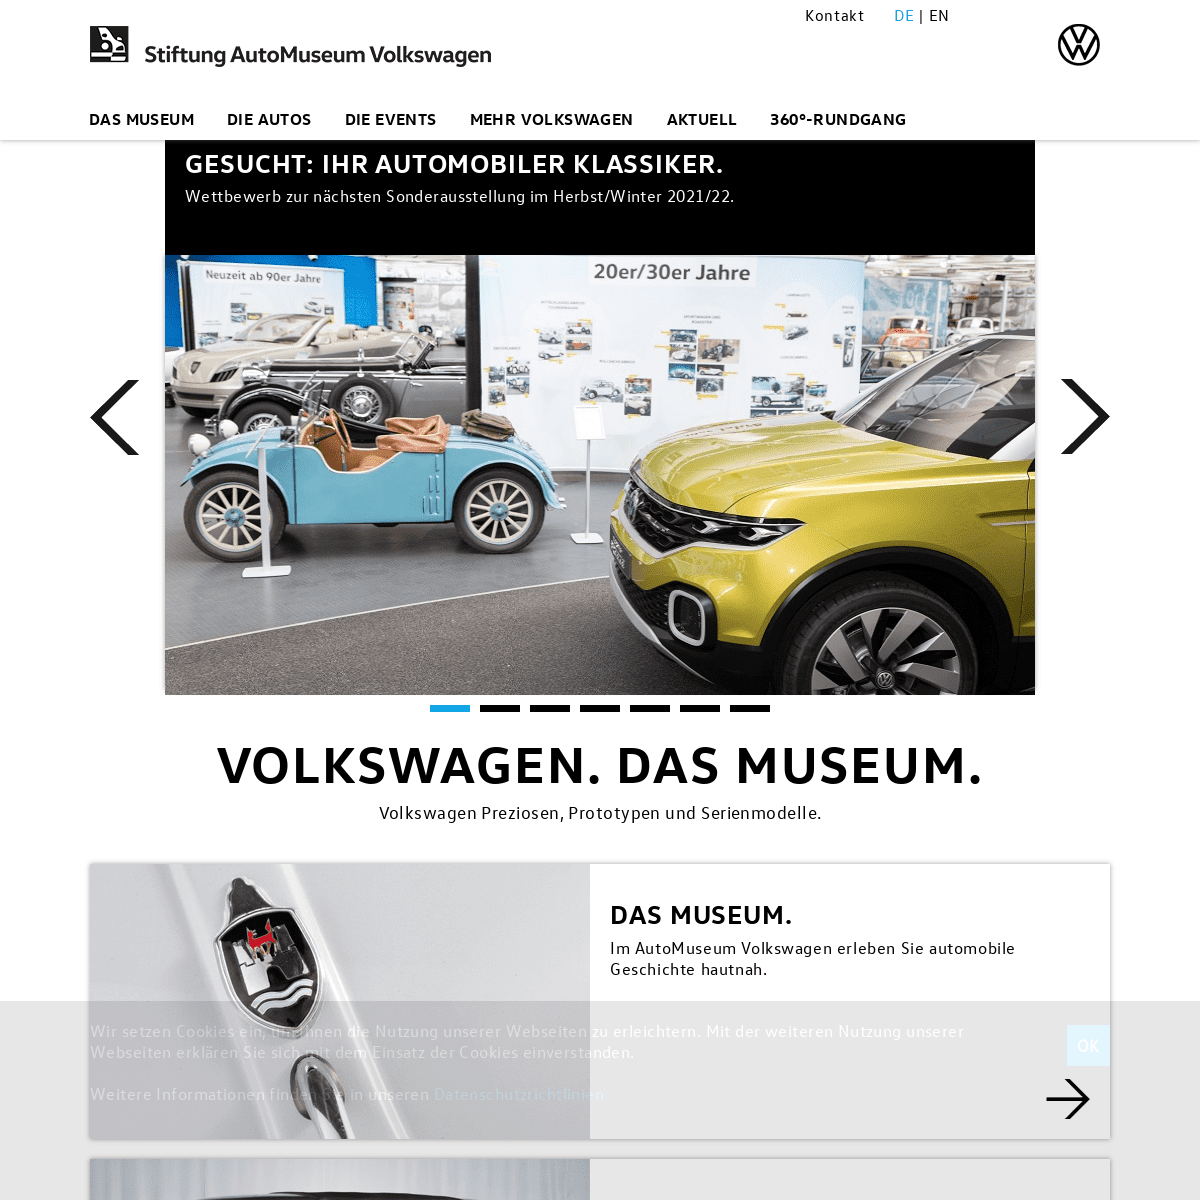 A complete backup of https://automuseum-volkswagen.de